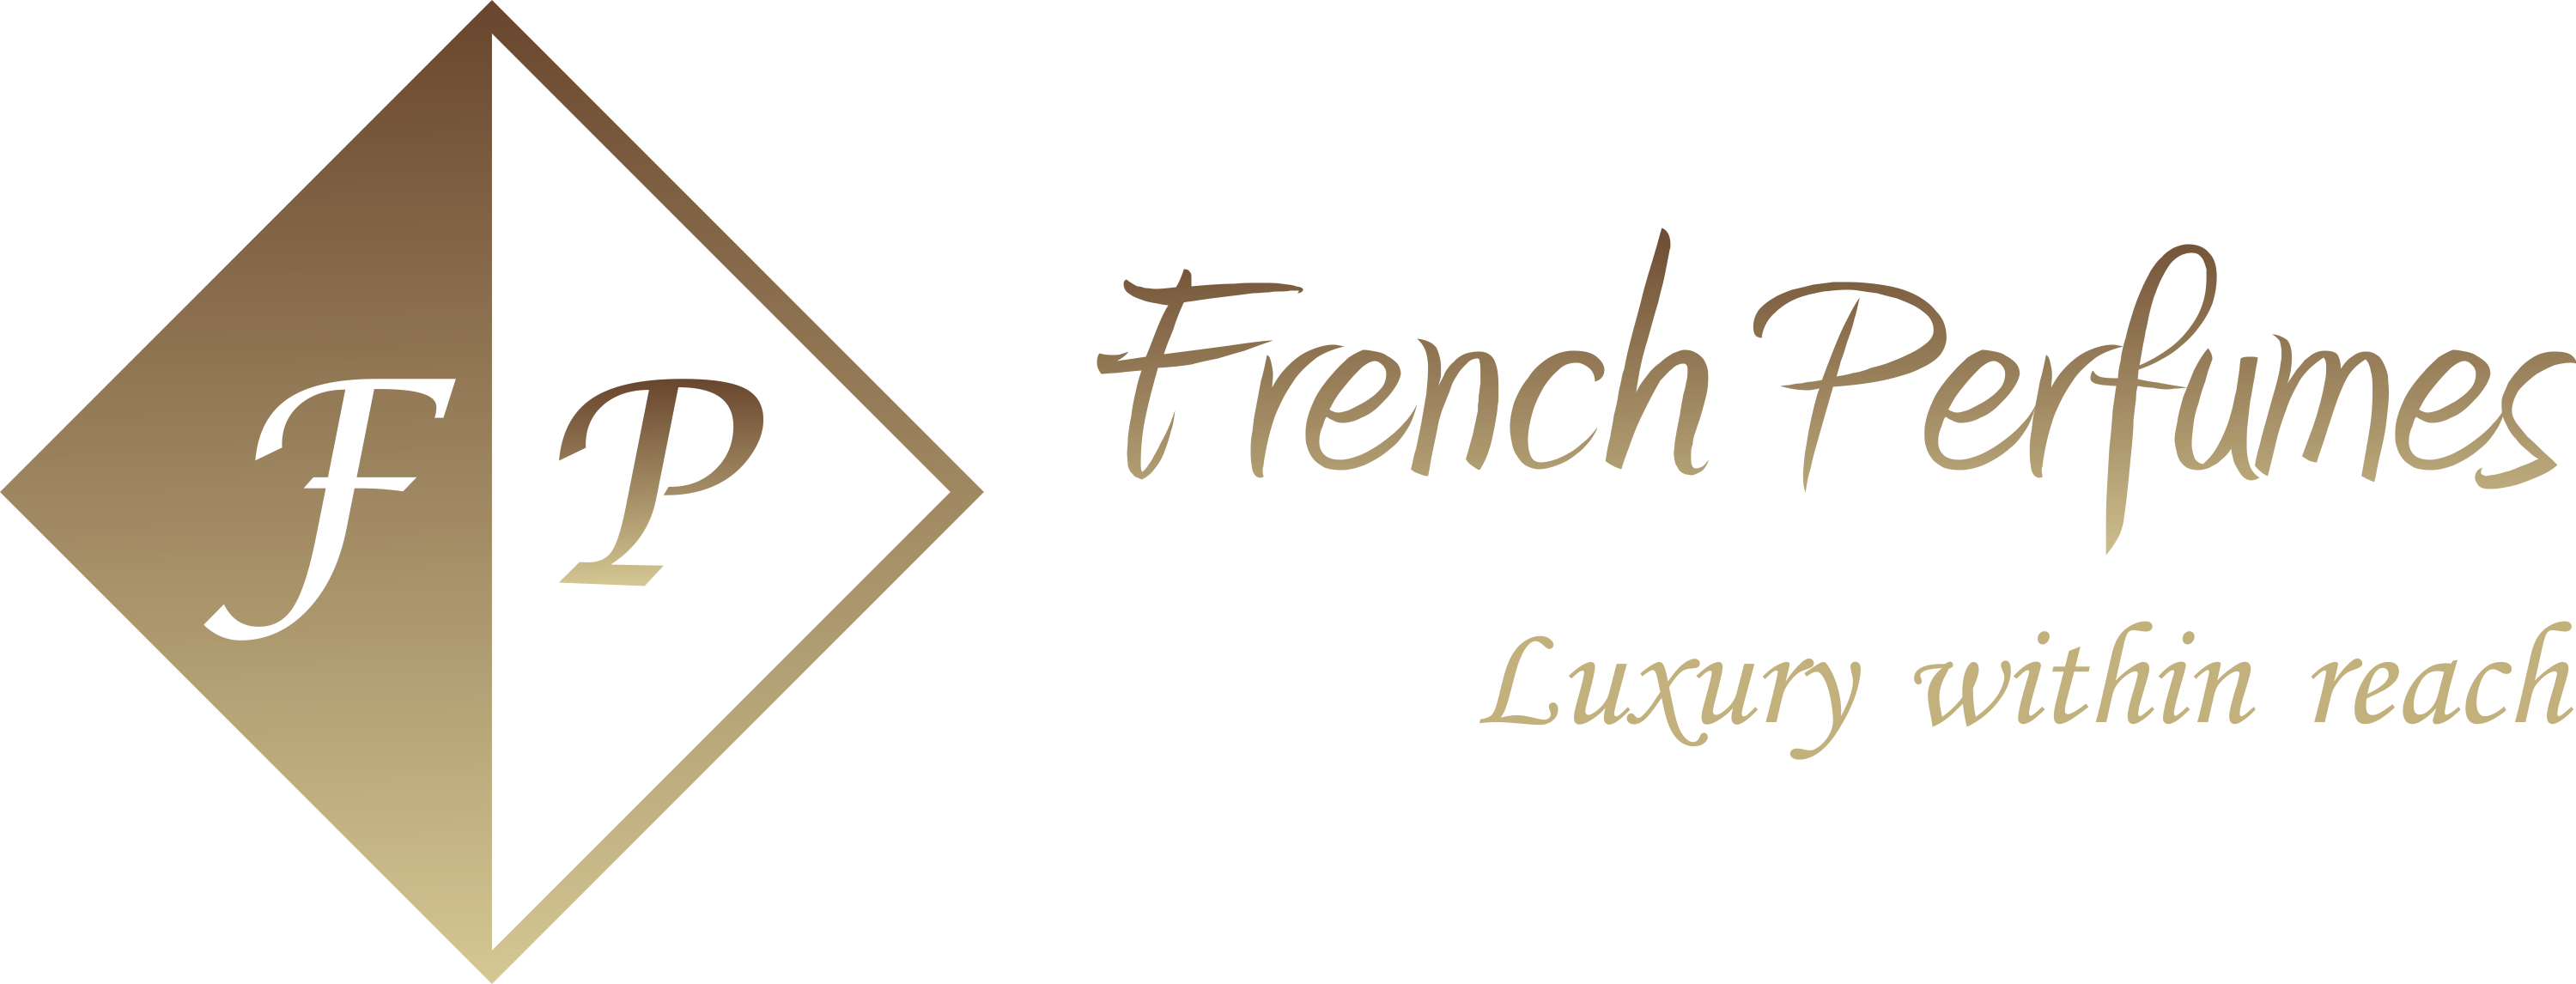 French Perfumes - náhrada za originálne parfémy